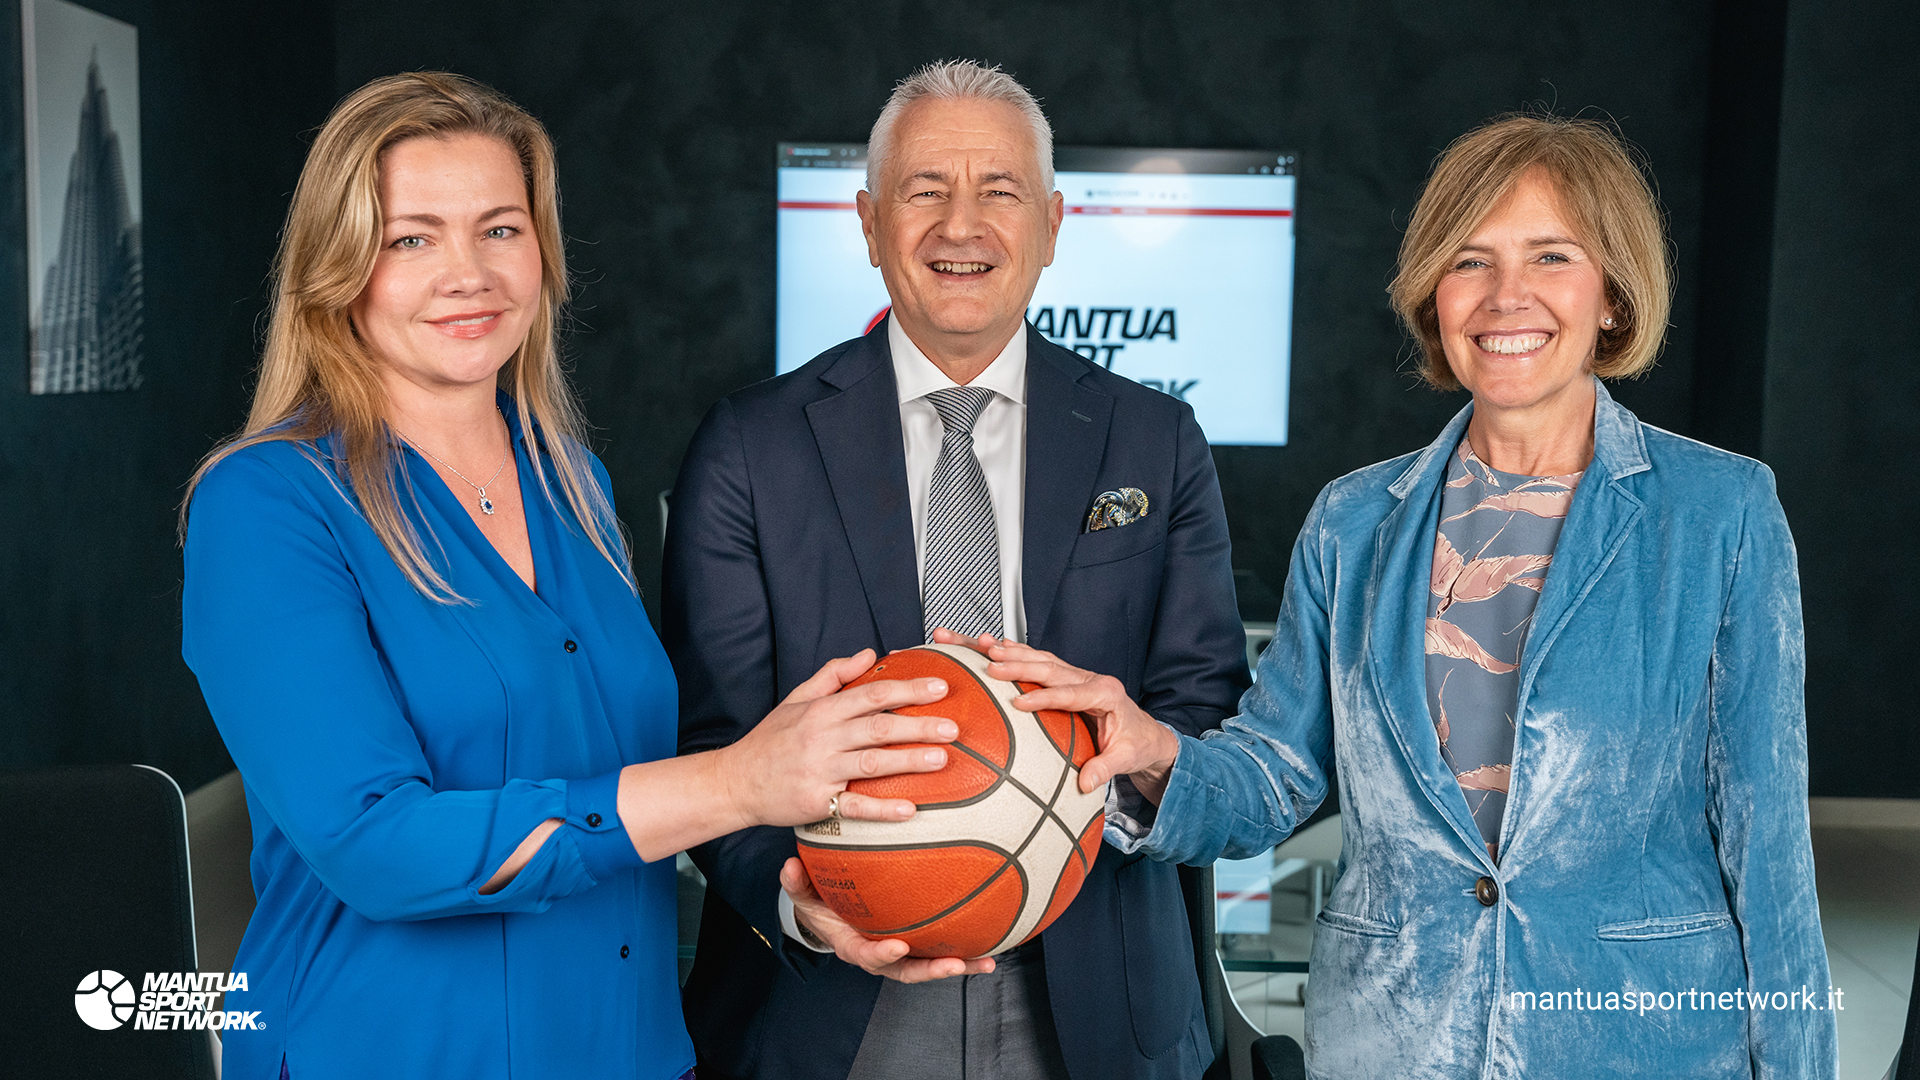 Mantua Sport Network<br /> Unire lo sport all'eccellenza aziendale